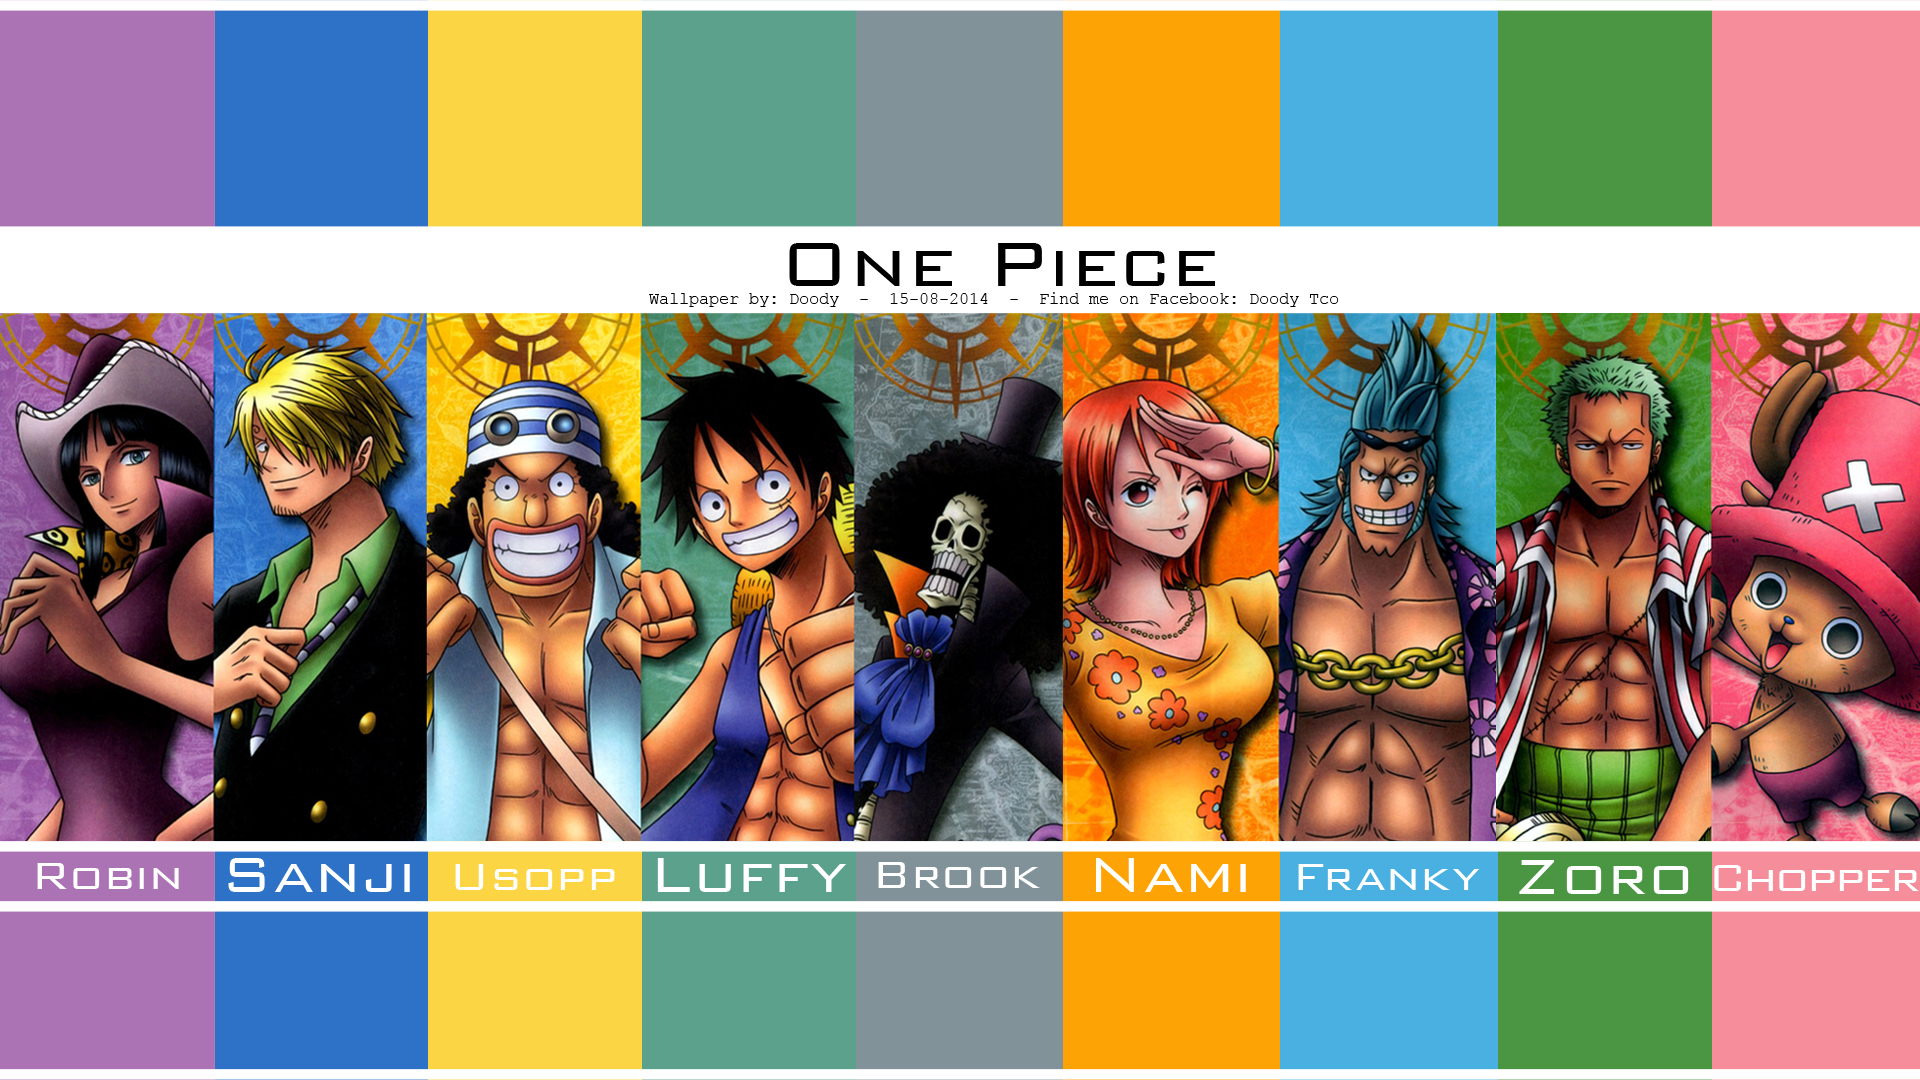 One Piece Wallpaper - One Piece Calendar 2011 , HD Wallpaper & Backgrounds